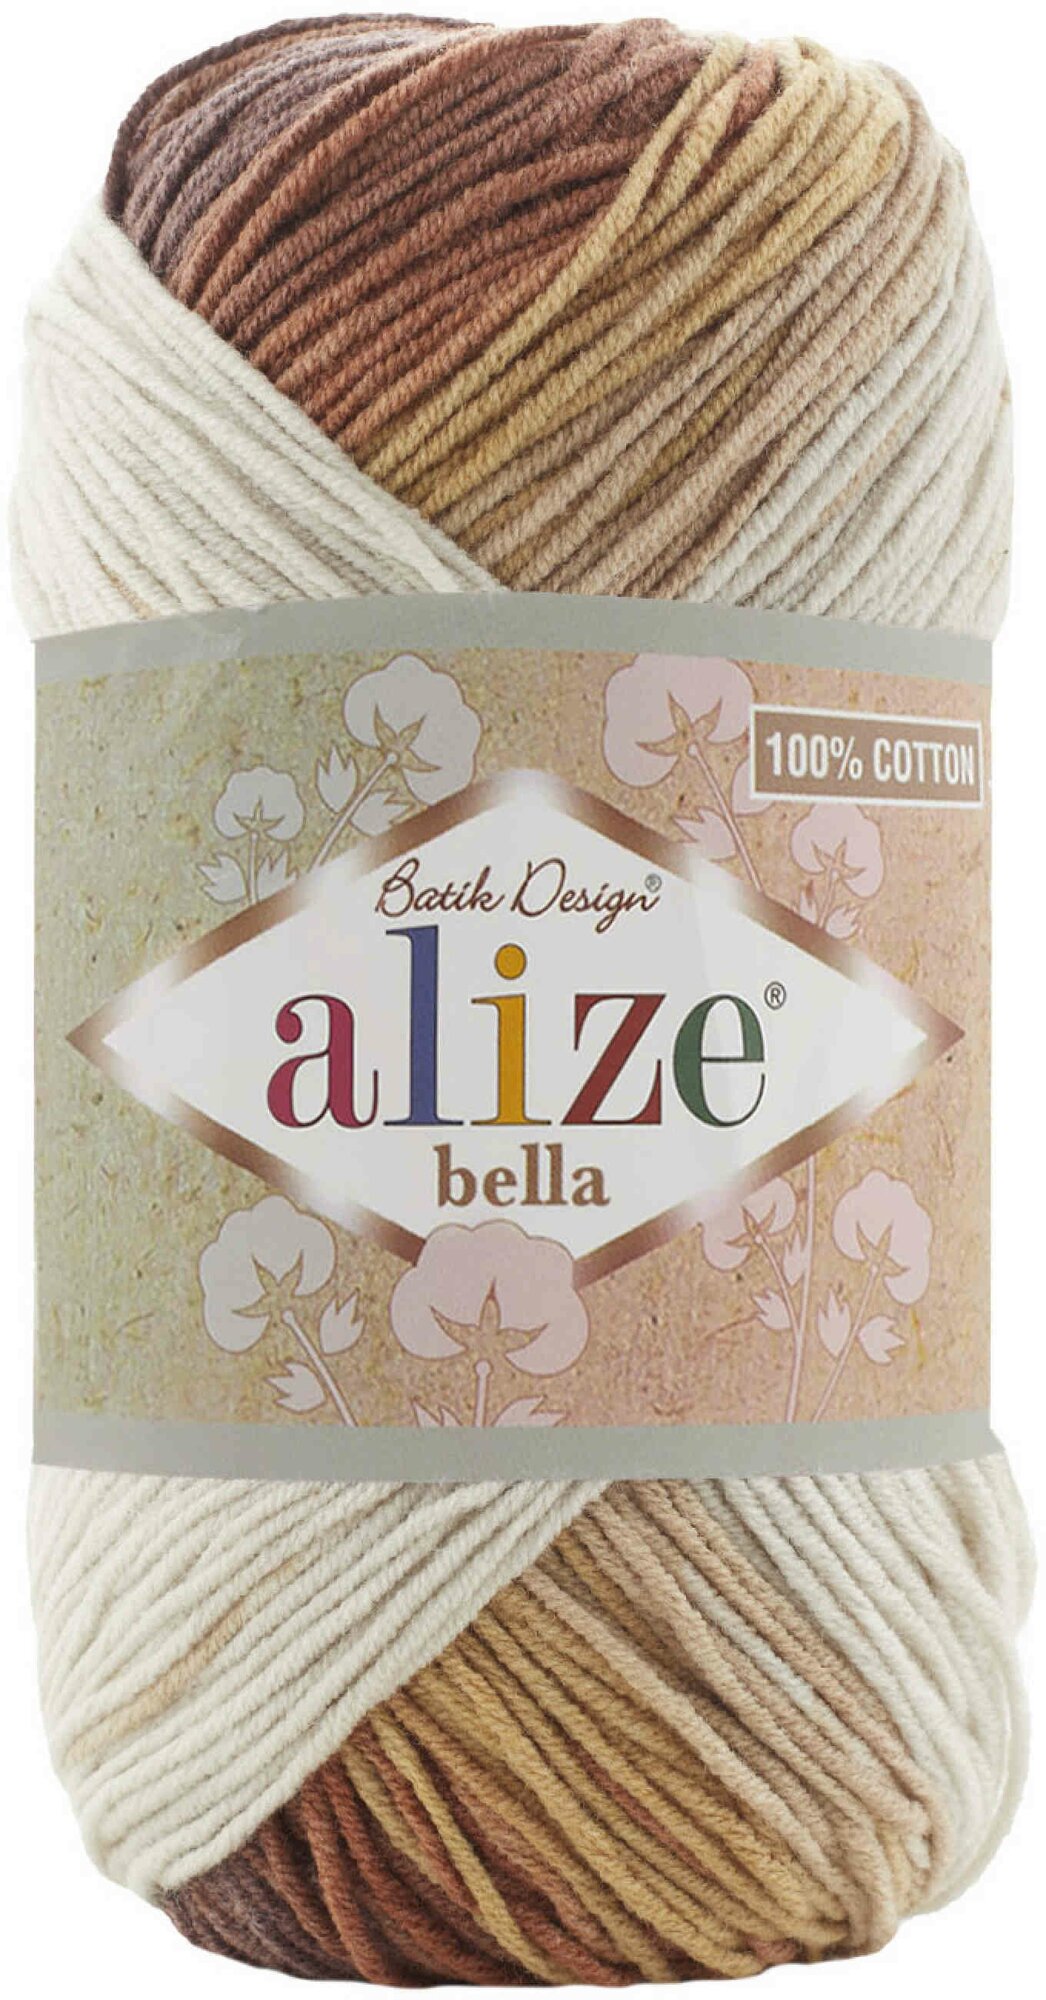 Пряжа Alize Bella Batik 100 молочный-бежевый-коричневый (3300), 100%хлопок, 360м, 100г, 2шт